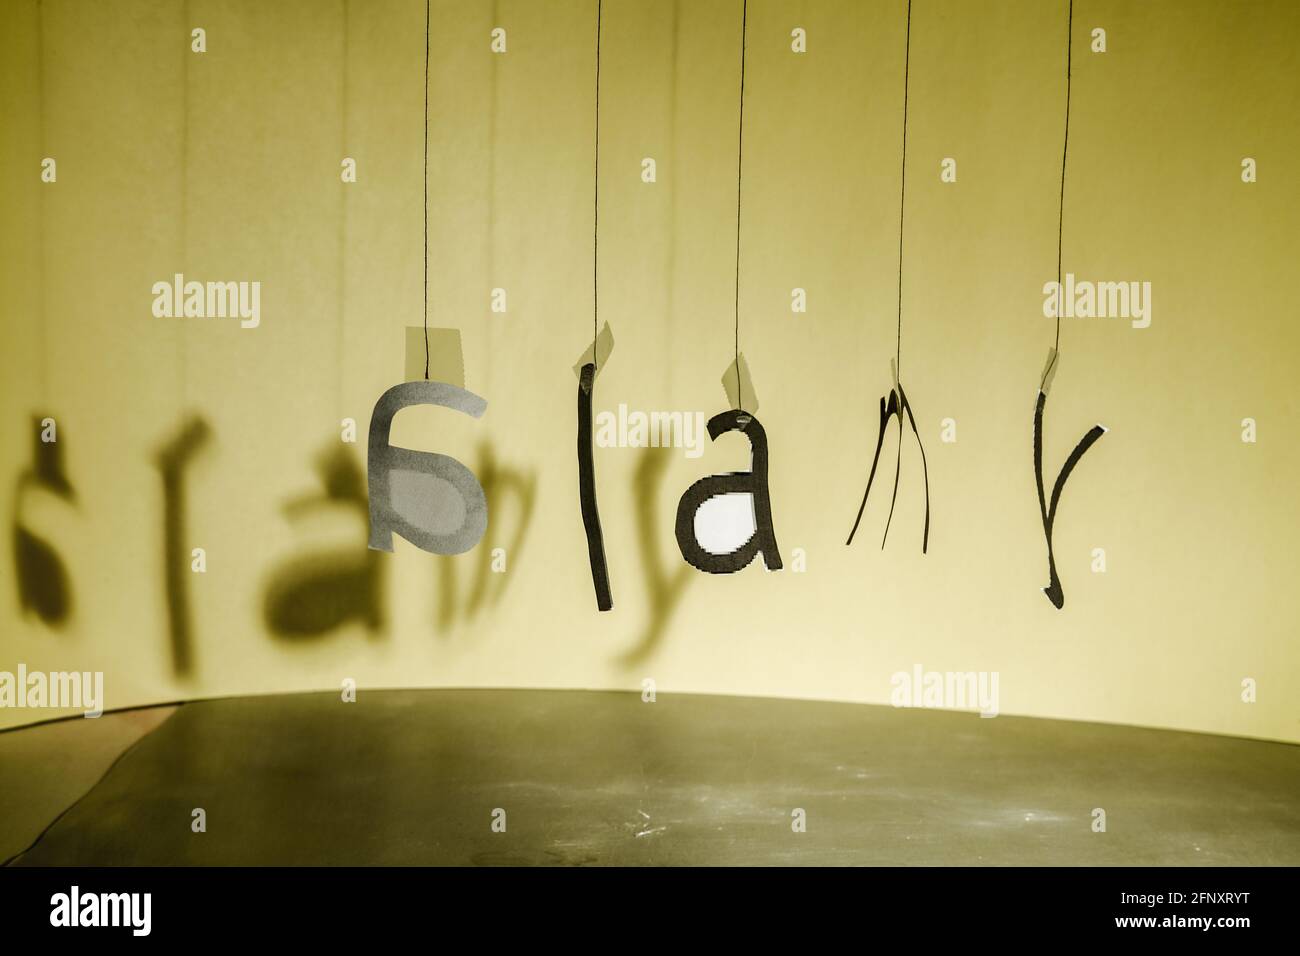 Les lettres accrochées à des fils forment, dans un certain désordre, le logo Alamy. Banque D'Images